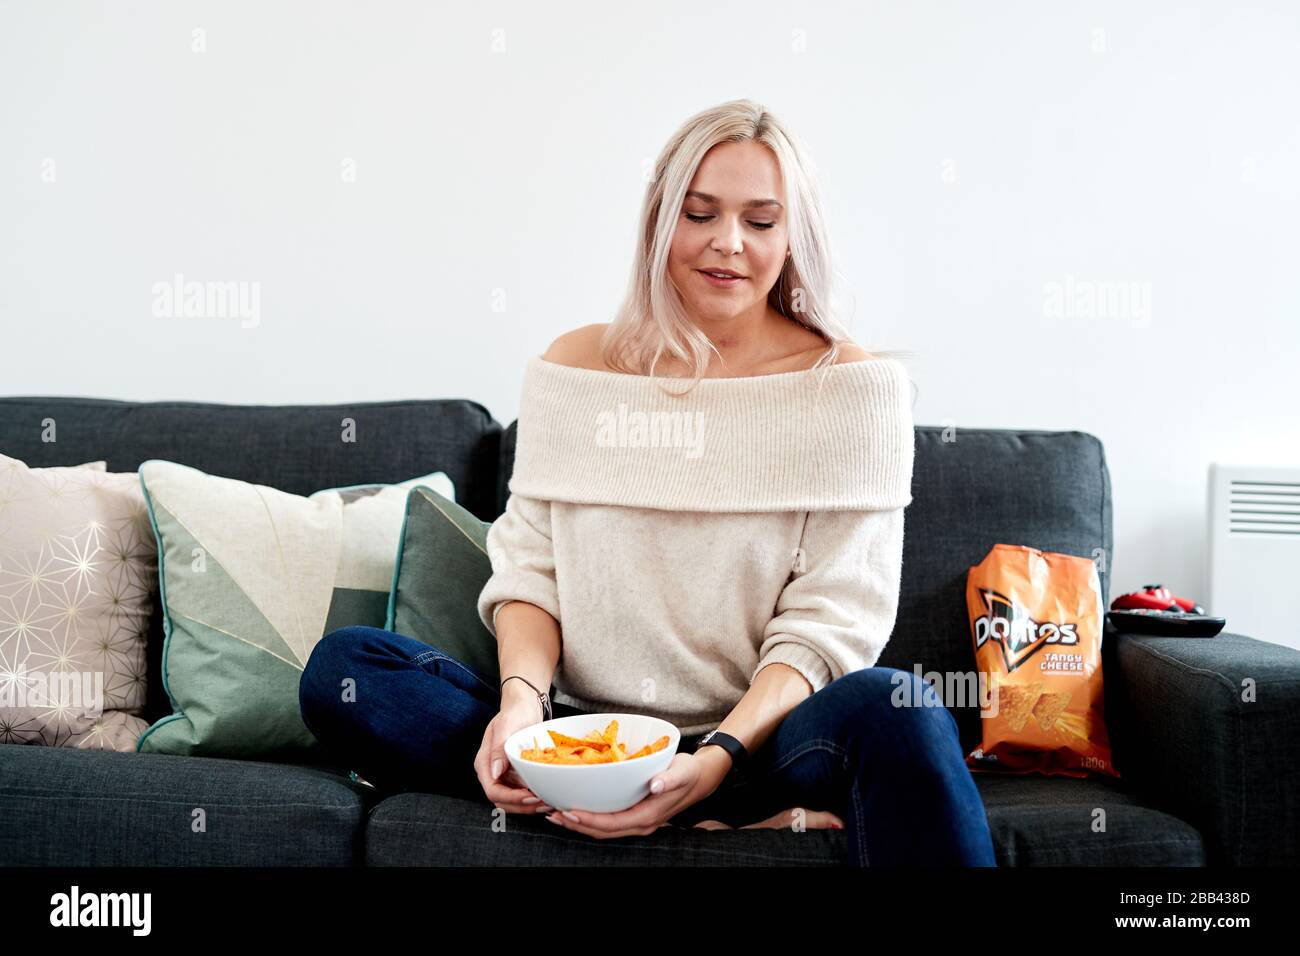 Eine einzelne blonde kaukasische Frau, die auf einem Sofa sitzt und eine weiße Schüssel mit tangiertem Käse Doritos hat Stockfoto